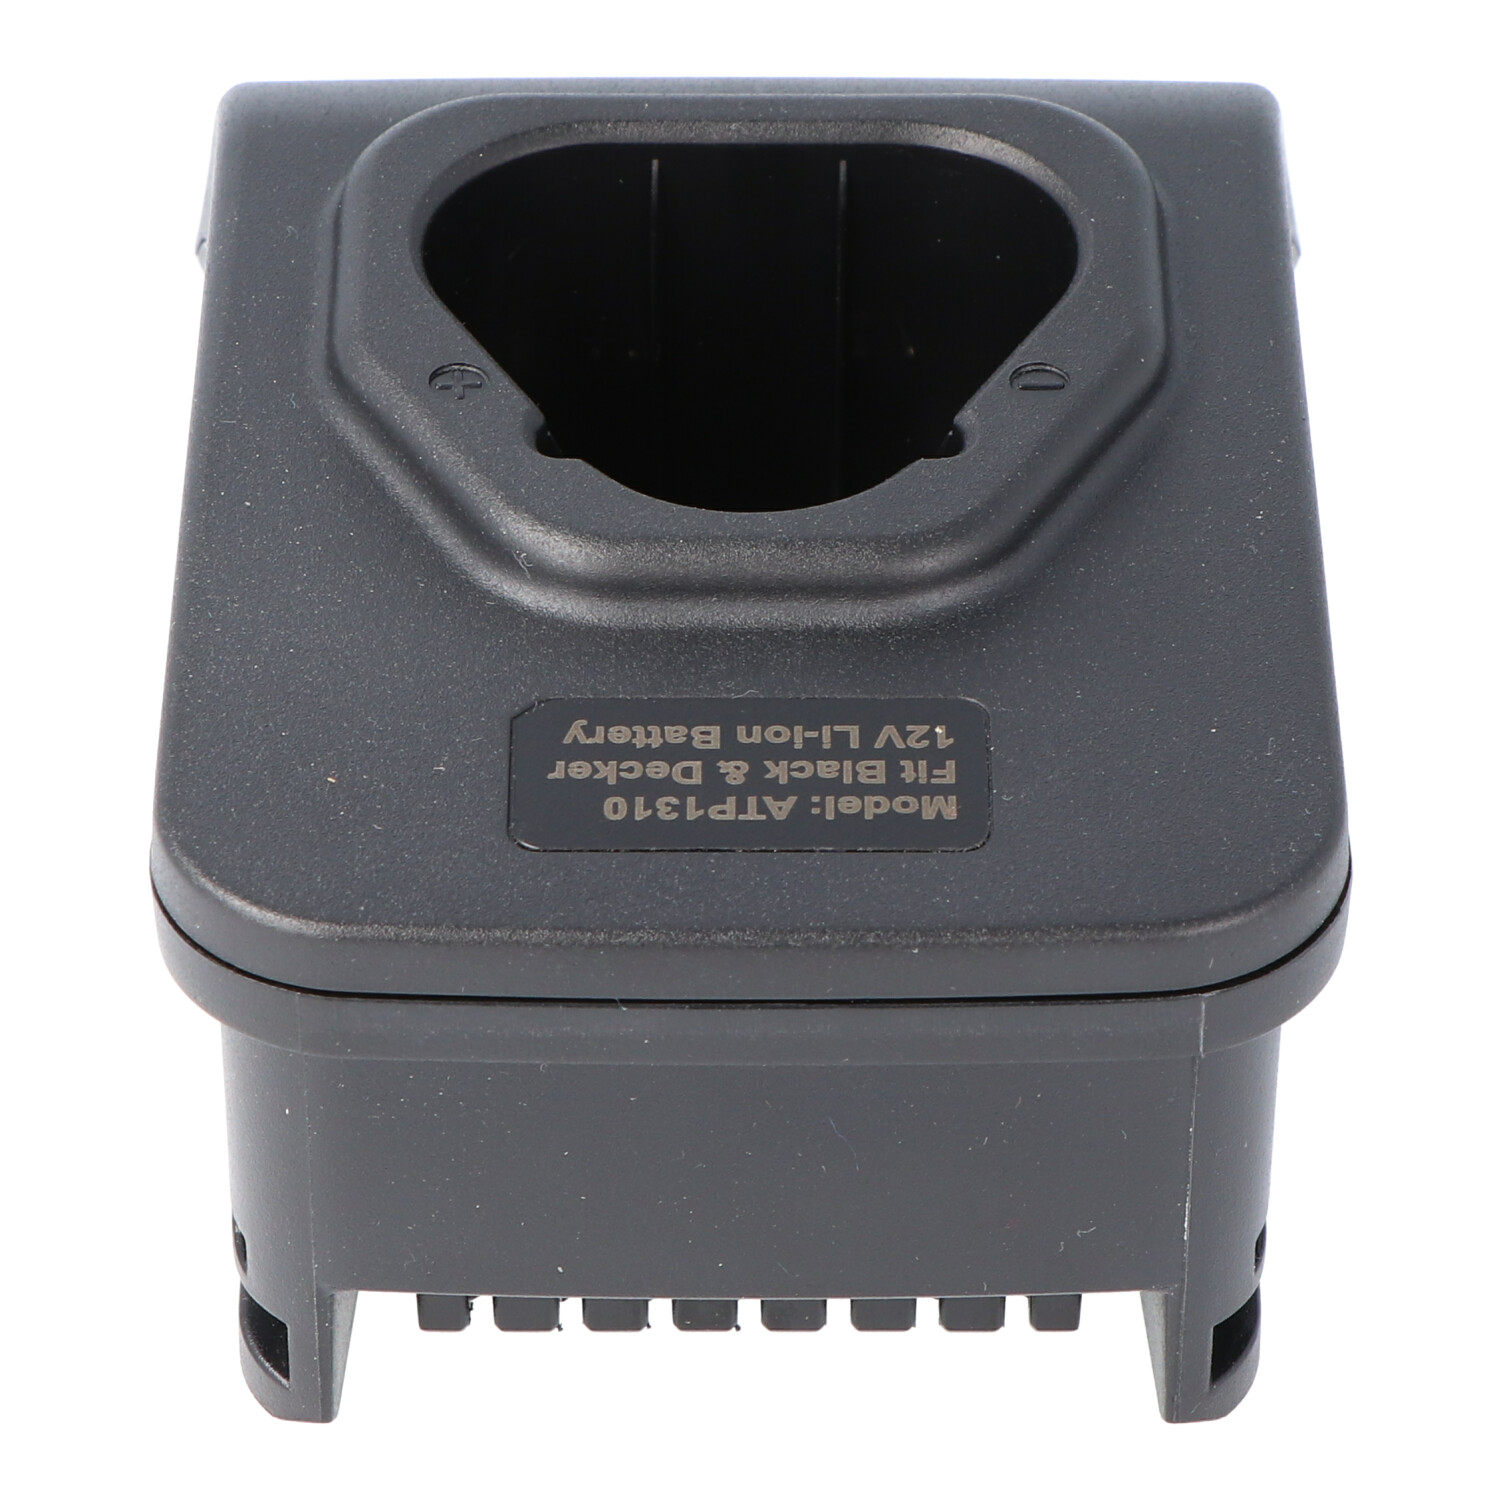 Ladeschale für Black & Decker BL1110, BL1310, nur verwendbar mit dem Basis Ladegerät ACH-1130